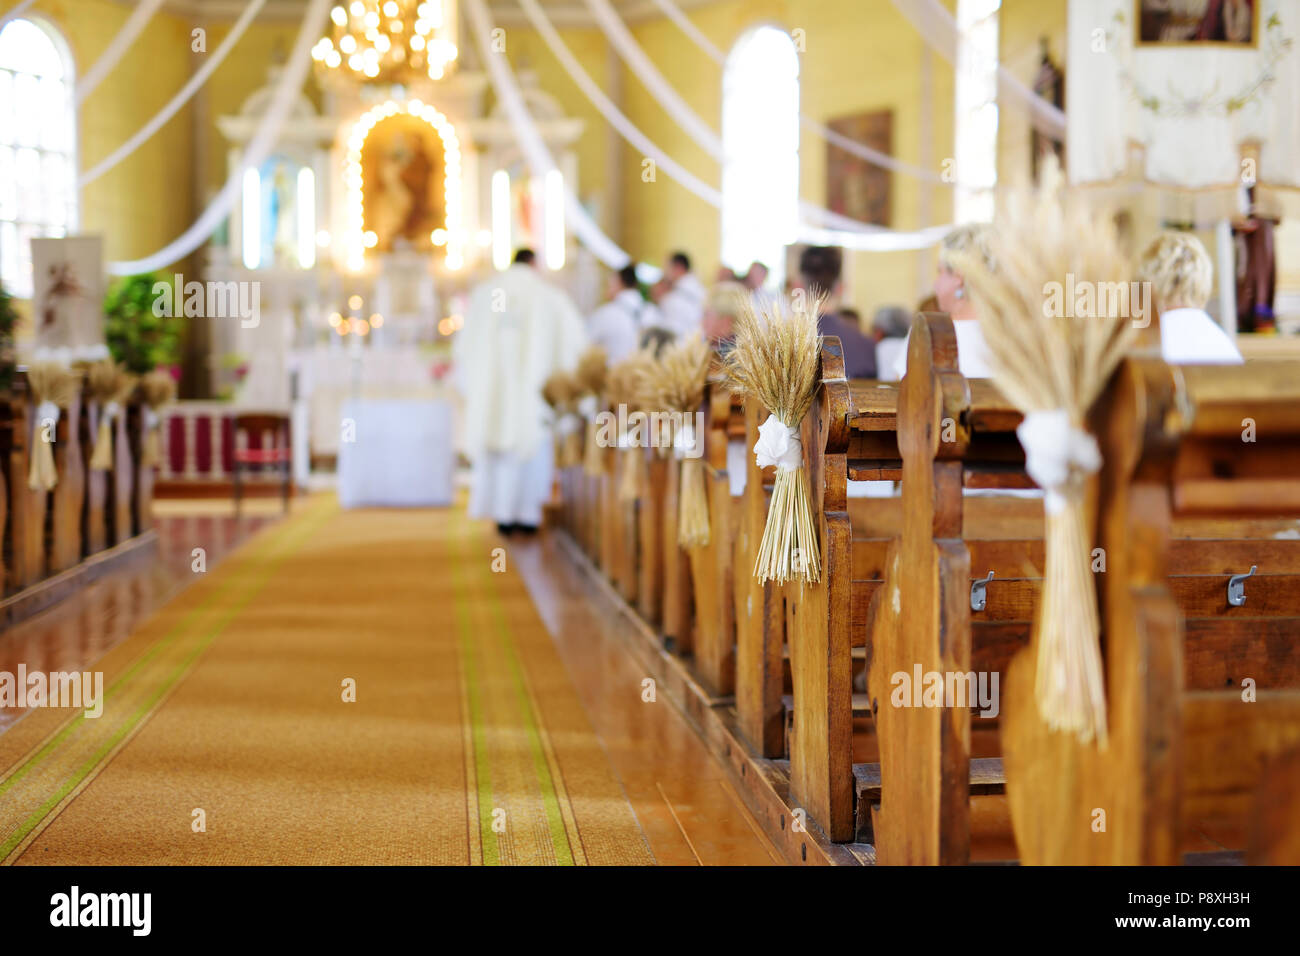 Schöne Roggen Hochzeit Dekoration in einer Kirche während